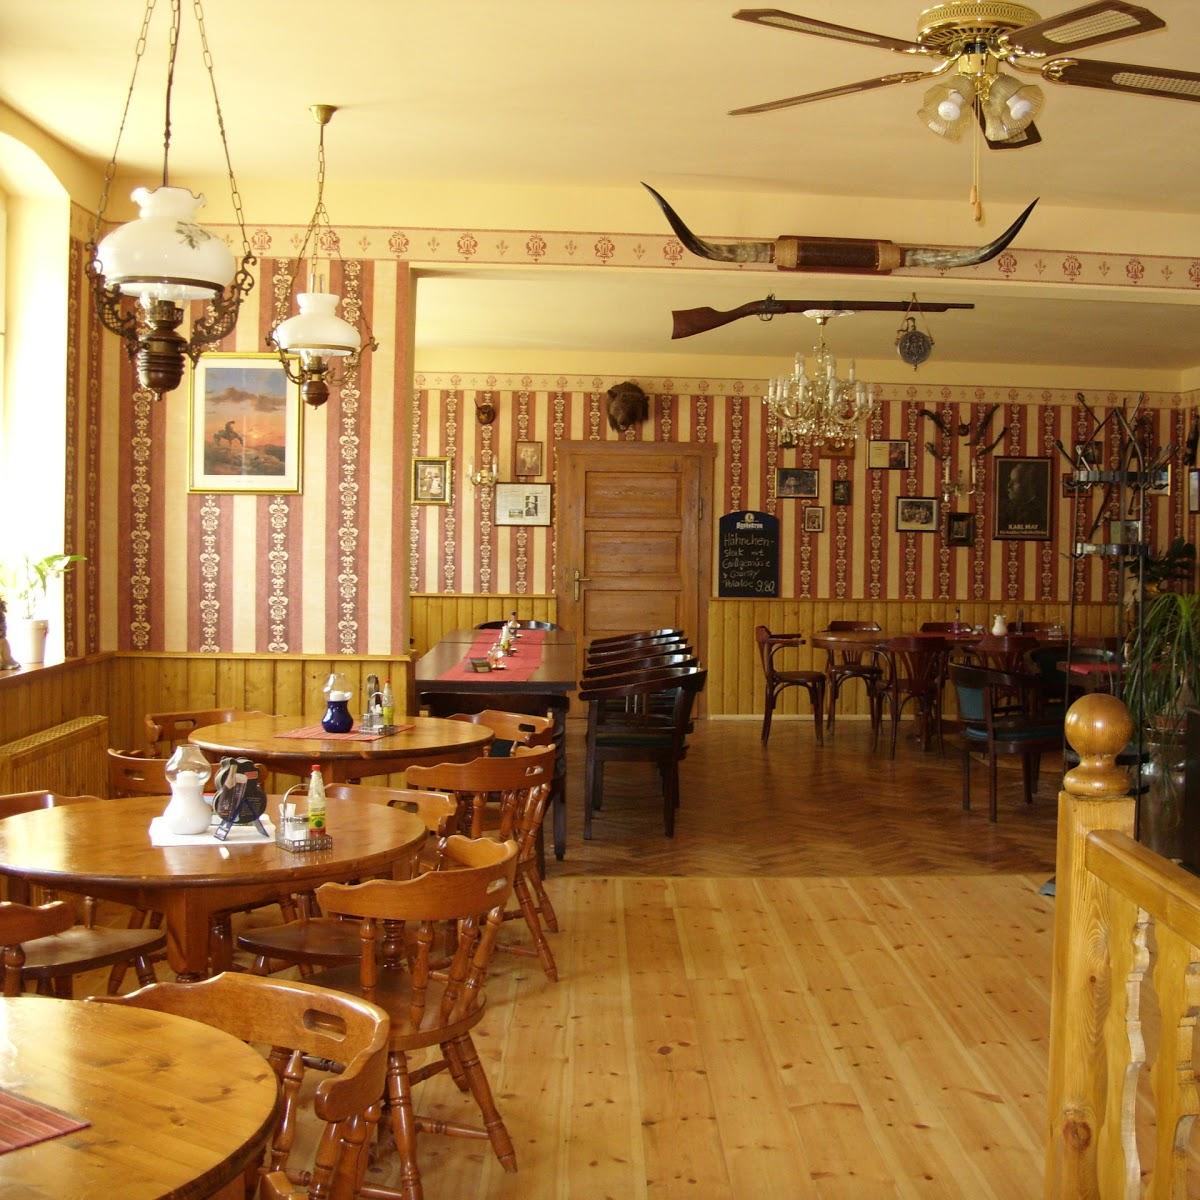 Restaurant "Sweet Water Station" in Niesky